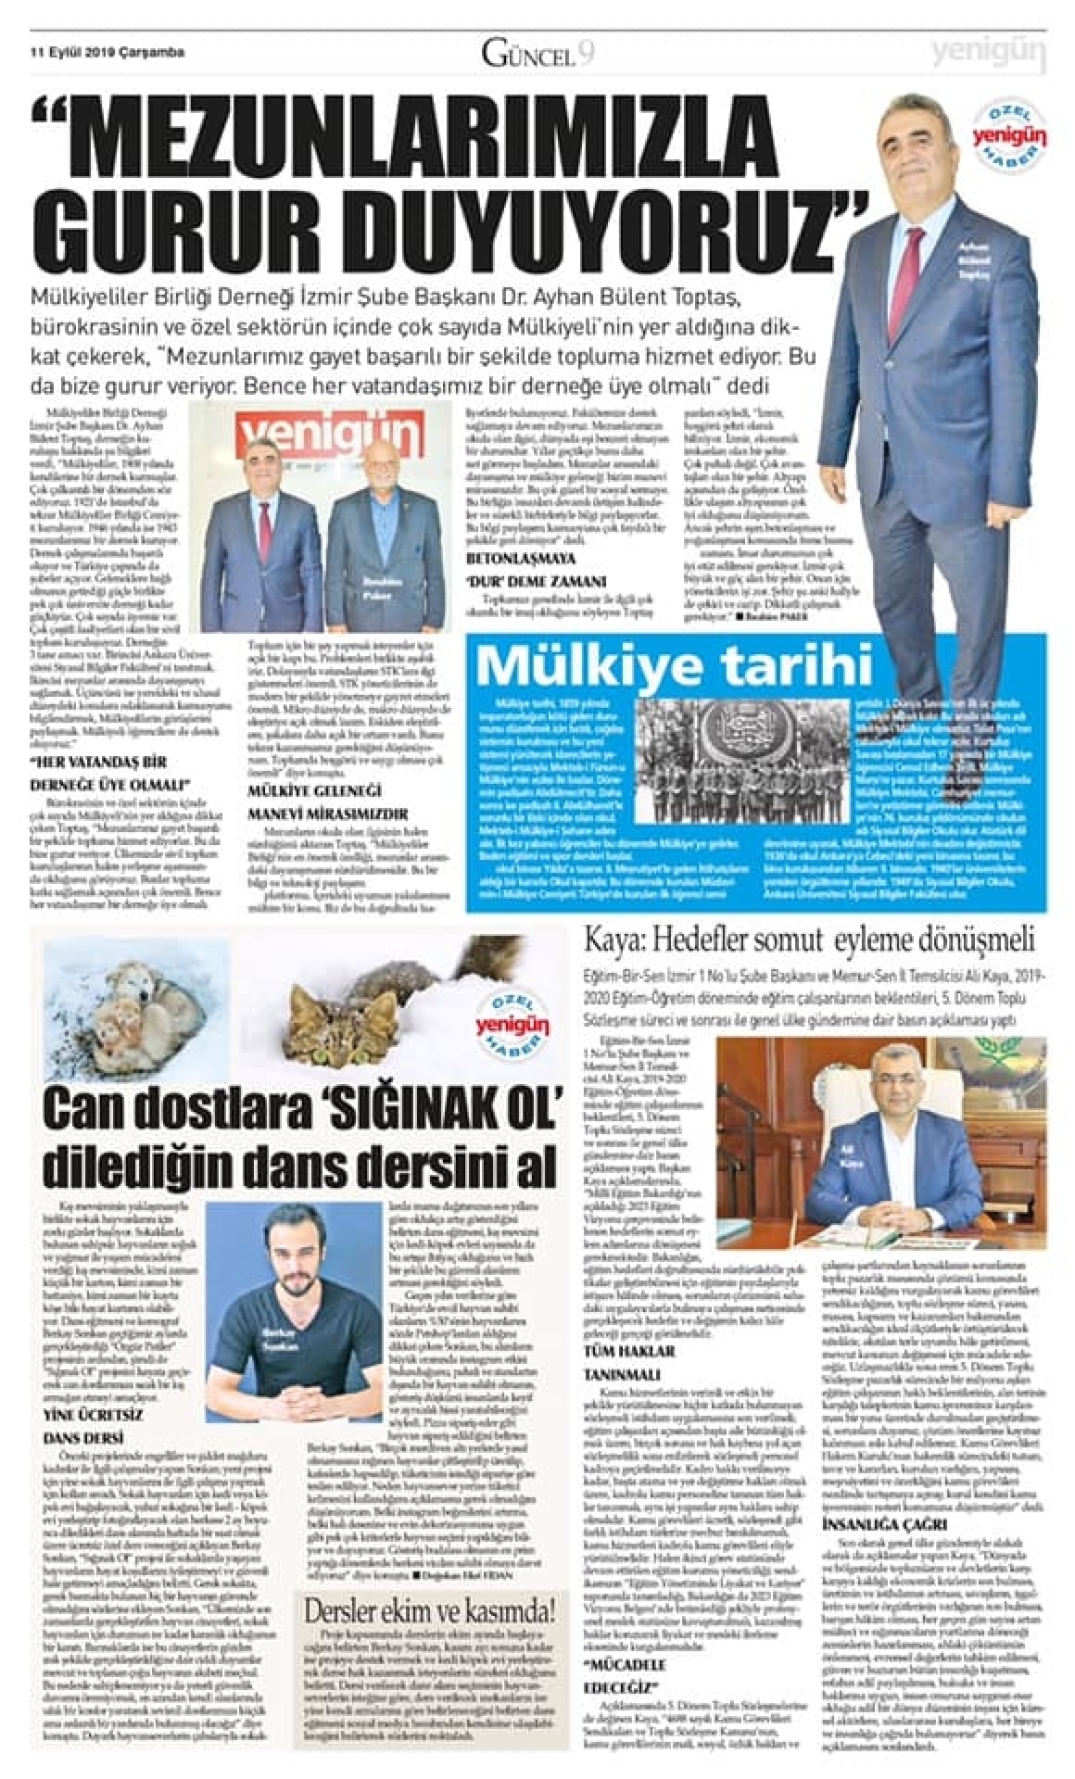 Şube Başkanımız Dr. Ayhan Bülent TOPTAŞ Yenigün TV' de canlı yayın konuğu oldu.